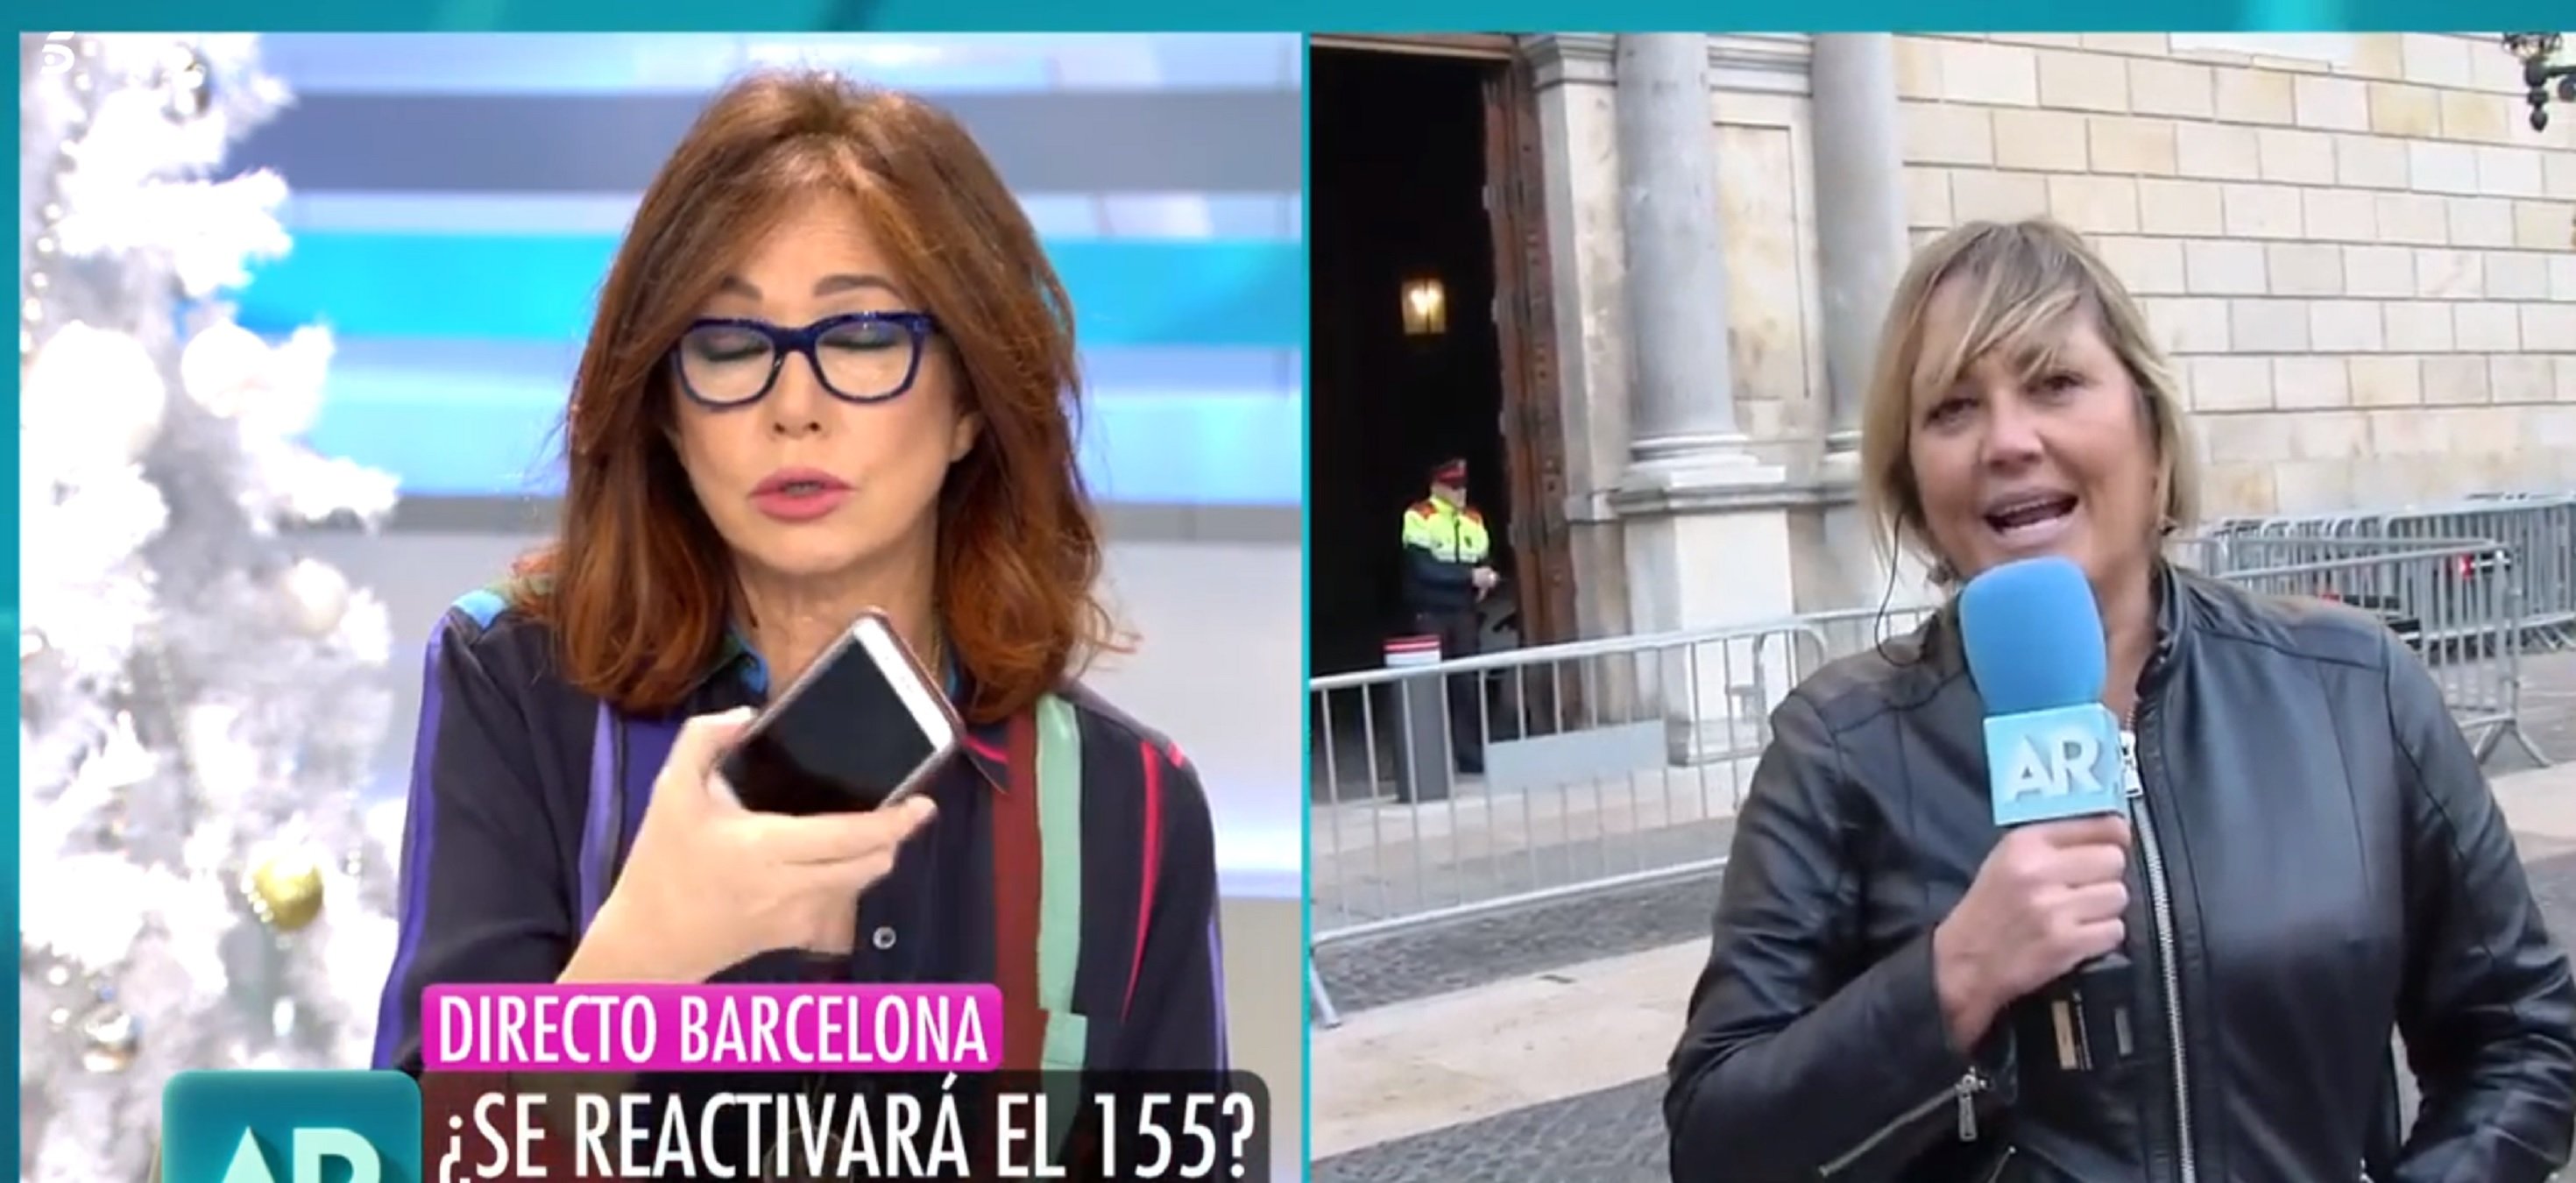 Ana Rosa insulta a Torra y desafía a los catalanes: "Y ahora enviadme mensajes"